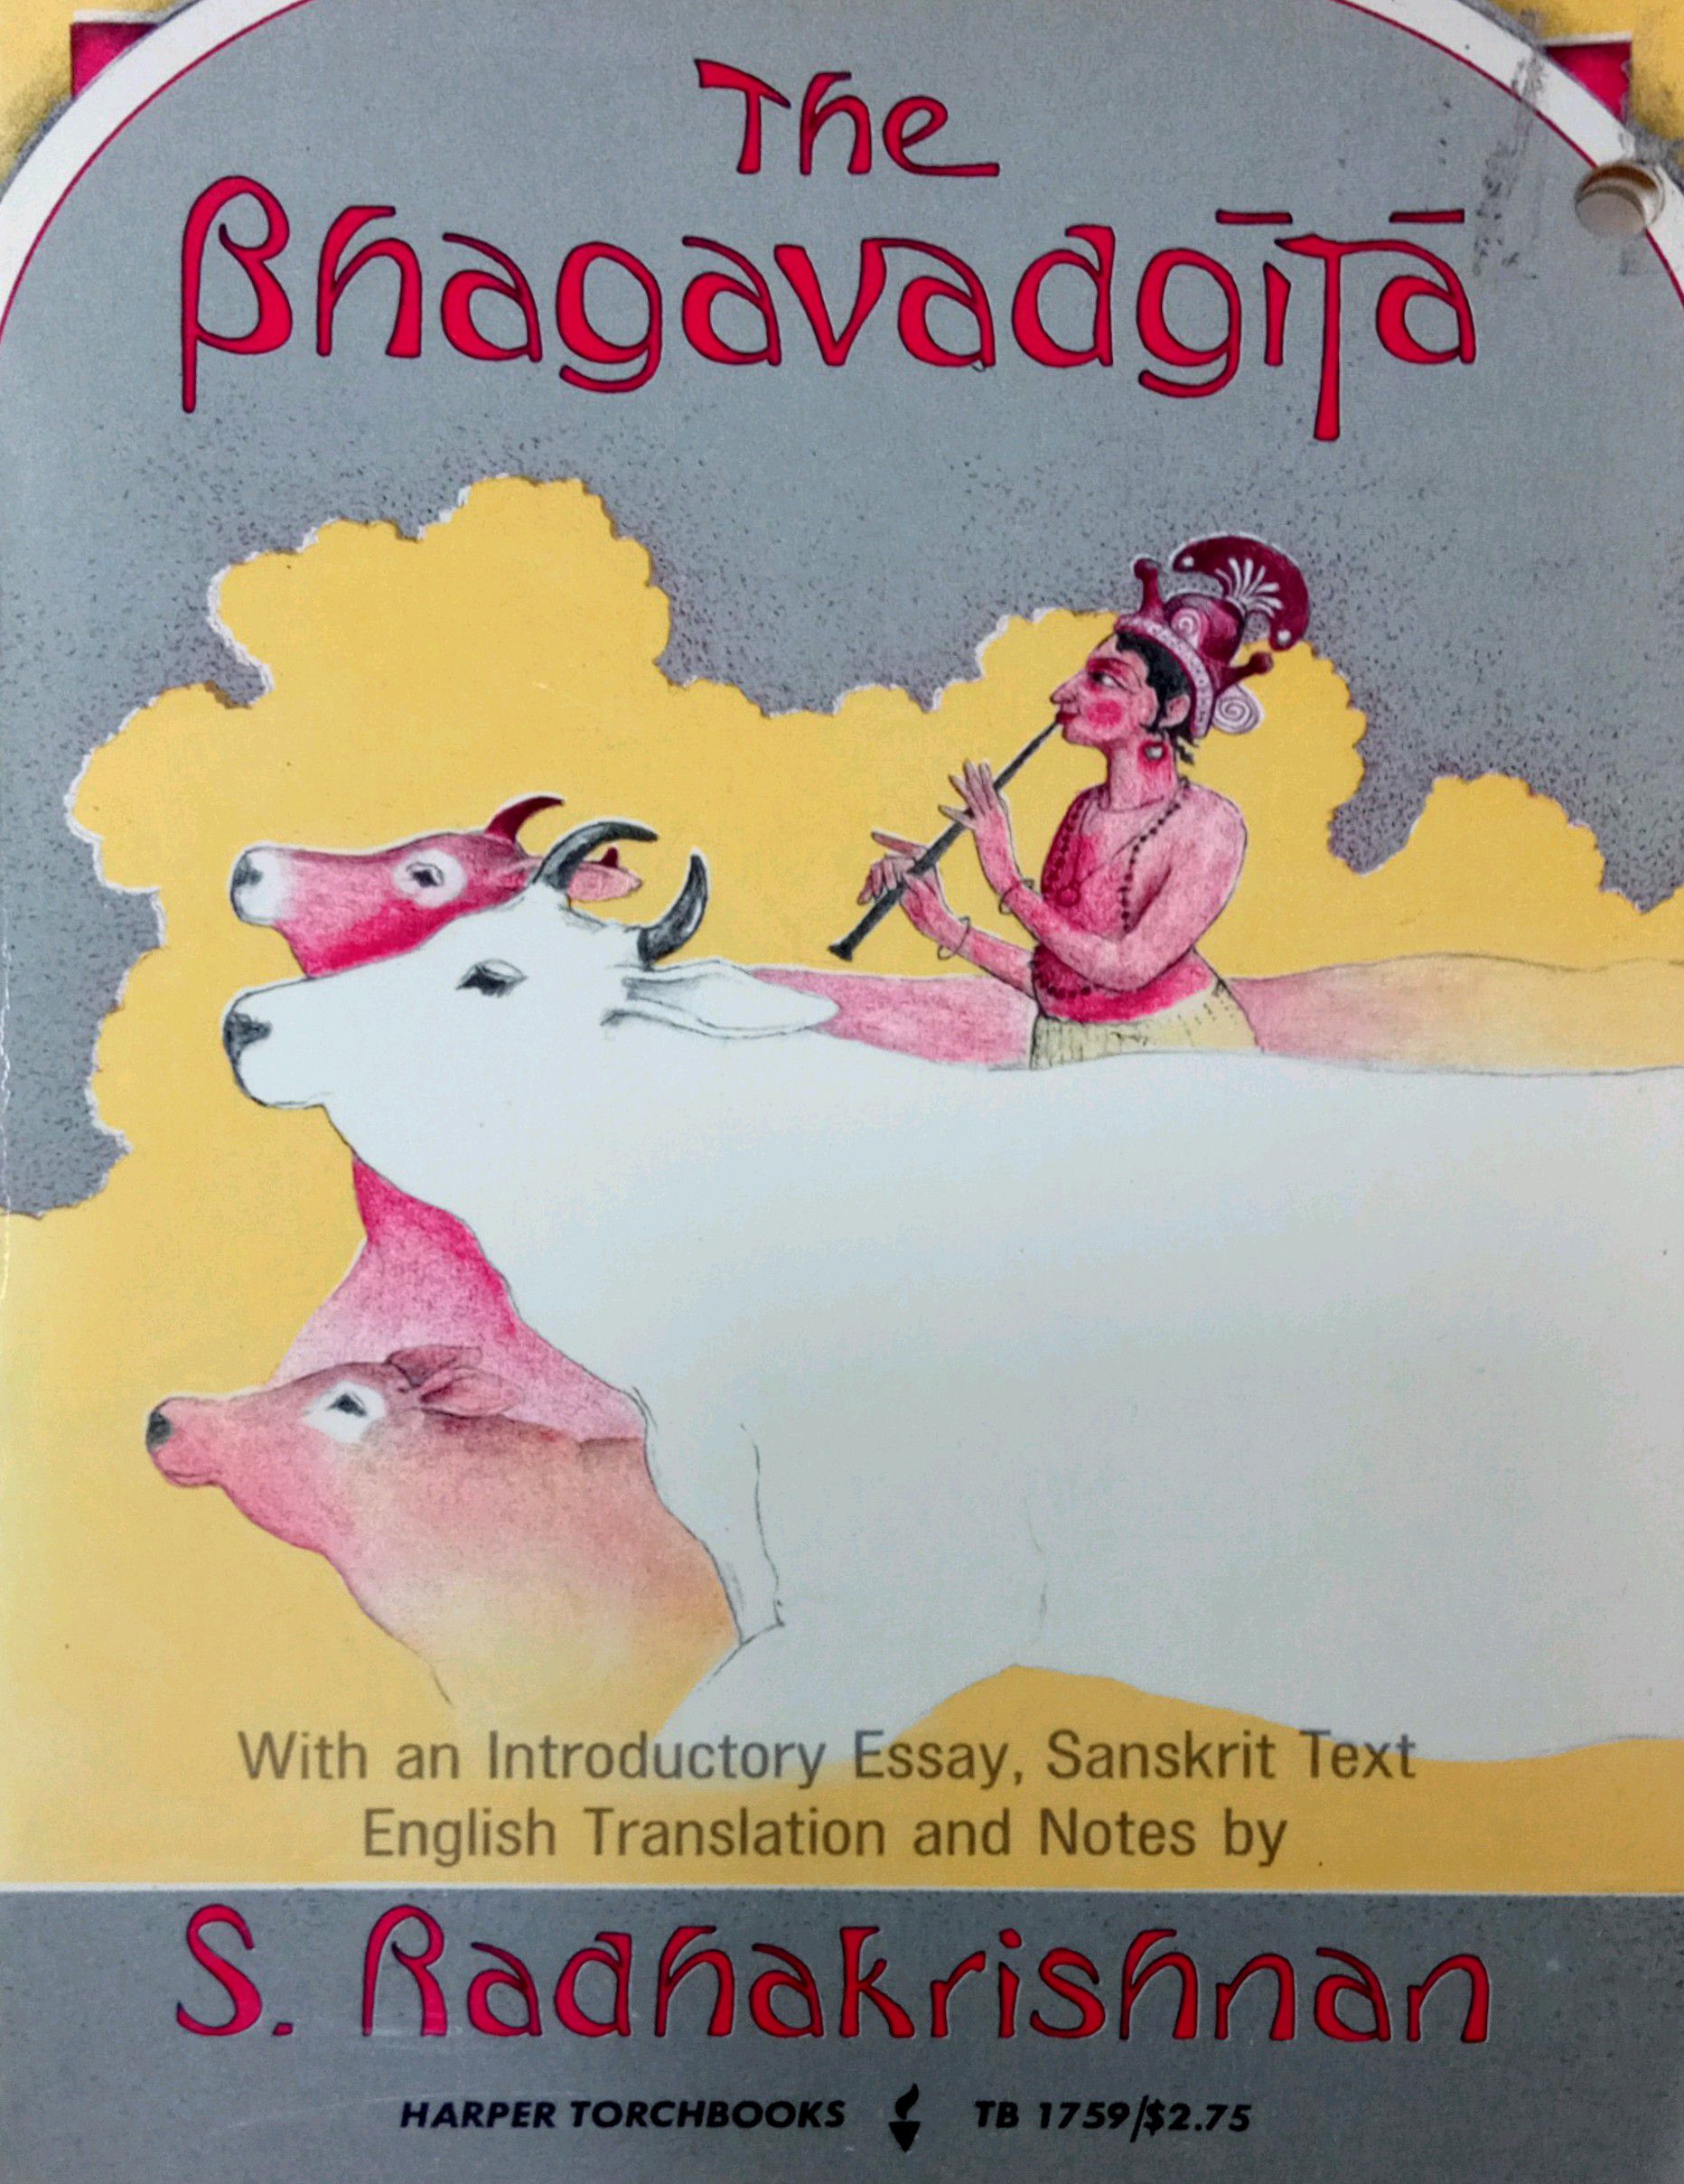 THE BHAGAVADGITA